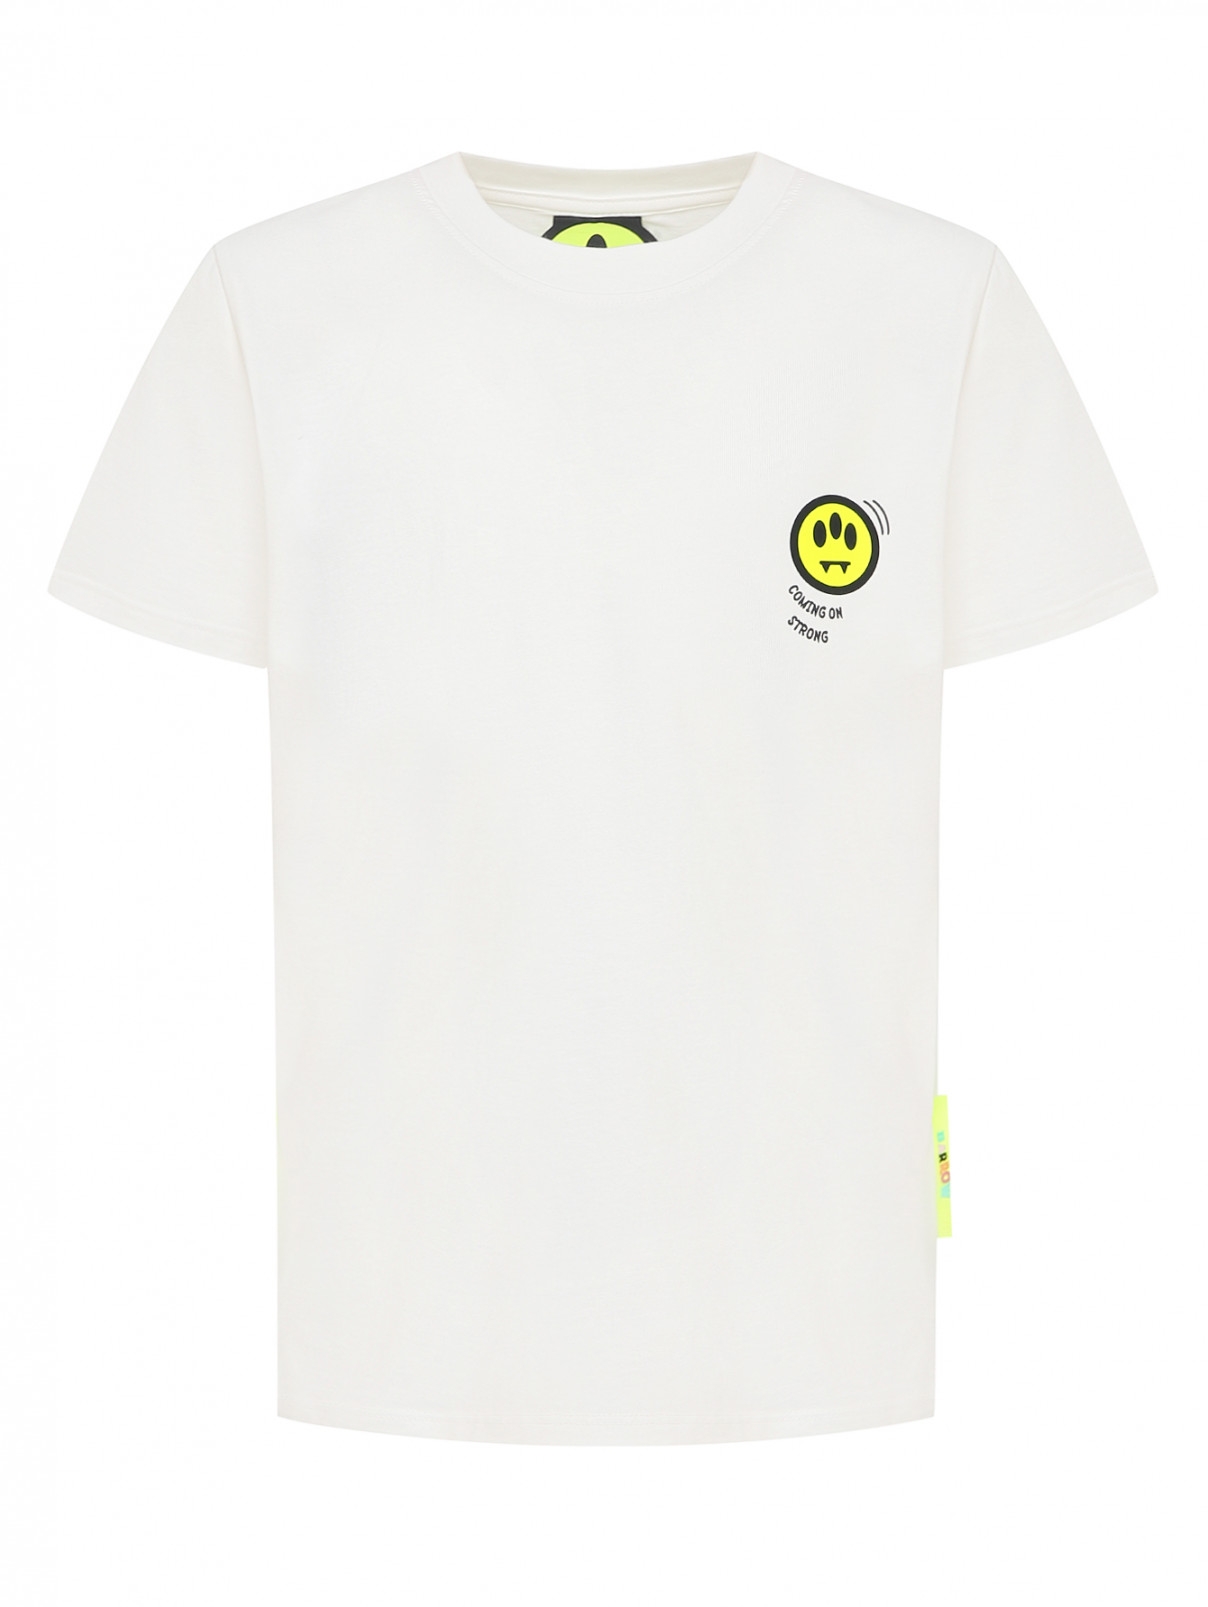 Хлопковая футболка с принтом Barrow Kids  –  Общий вид  – Цвет:  Белый